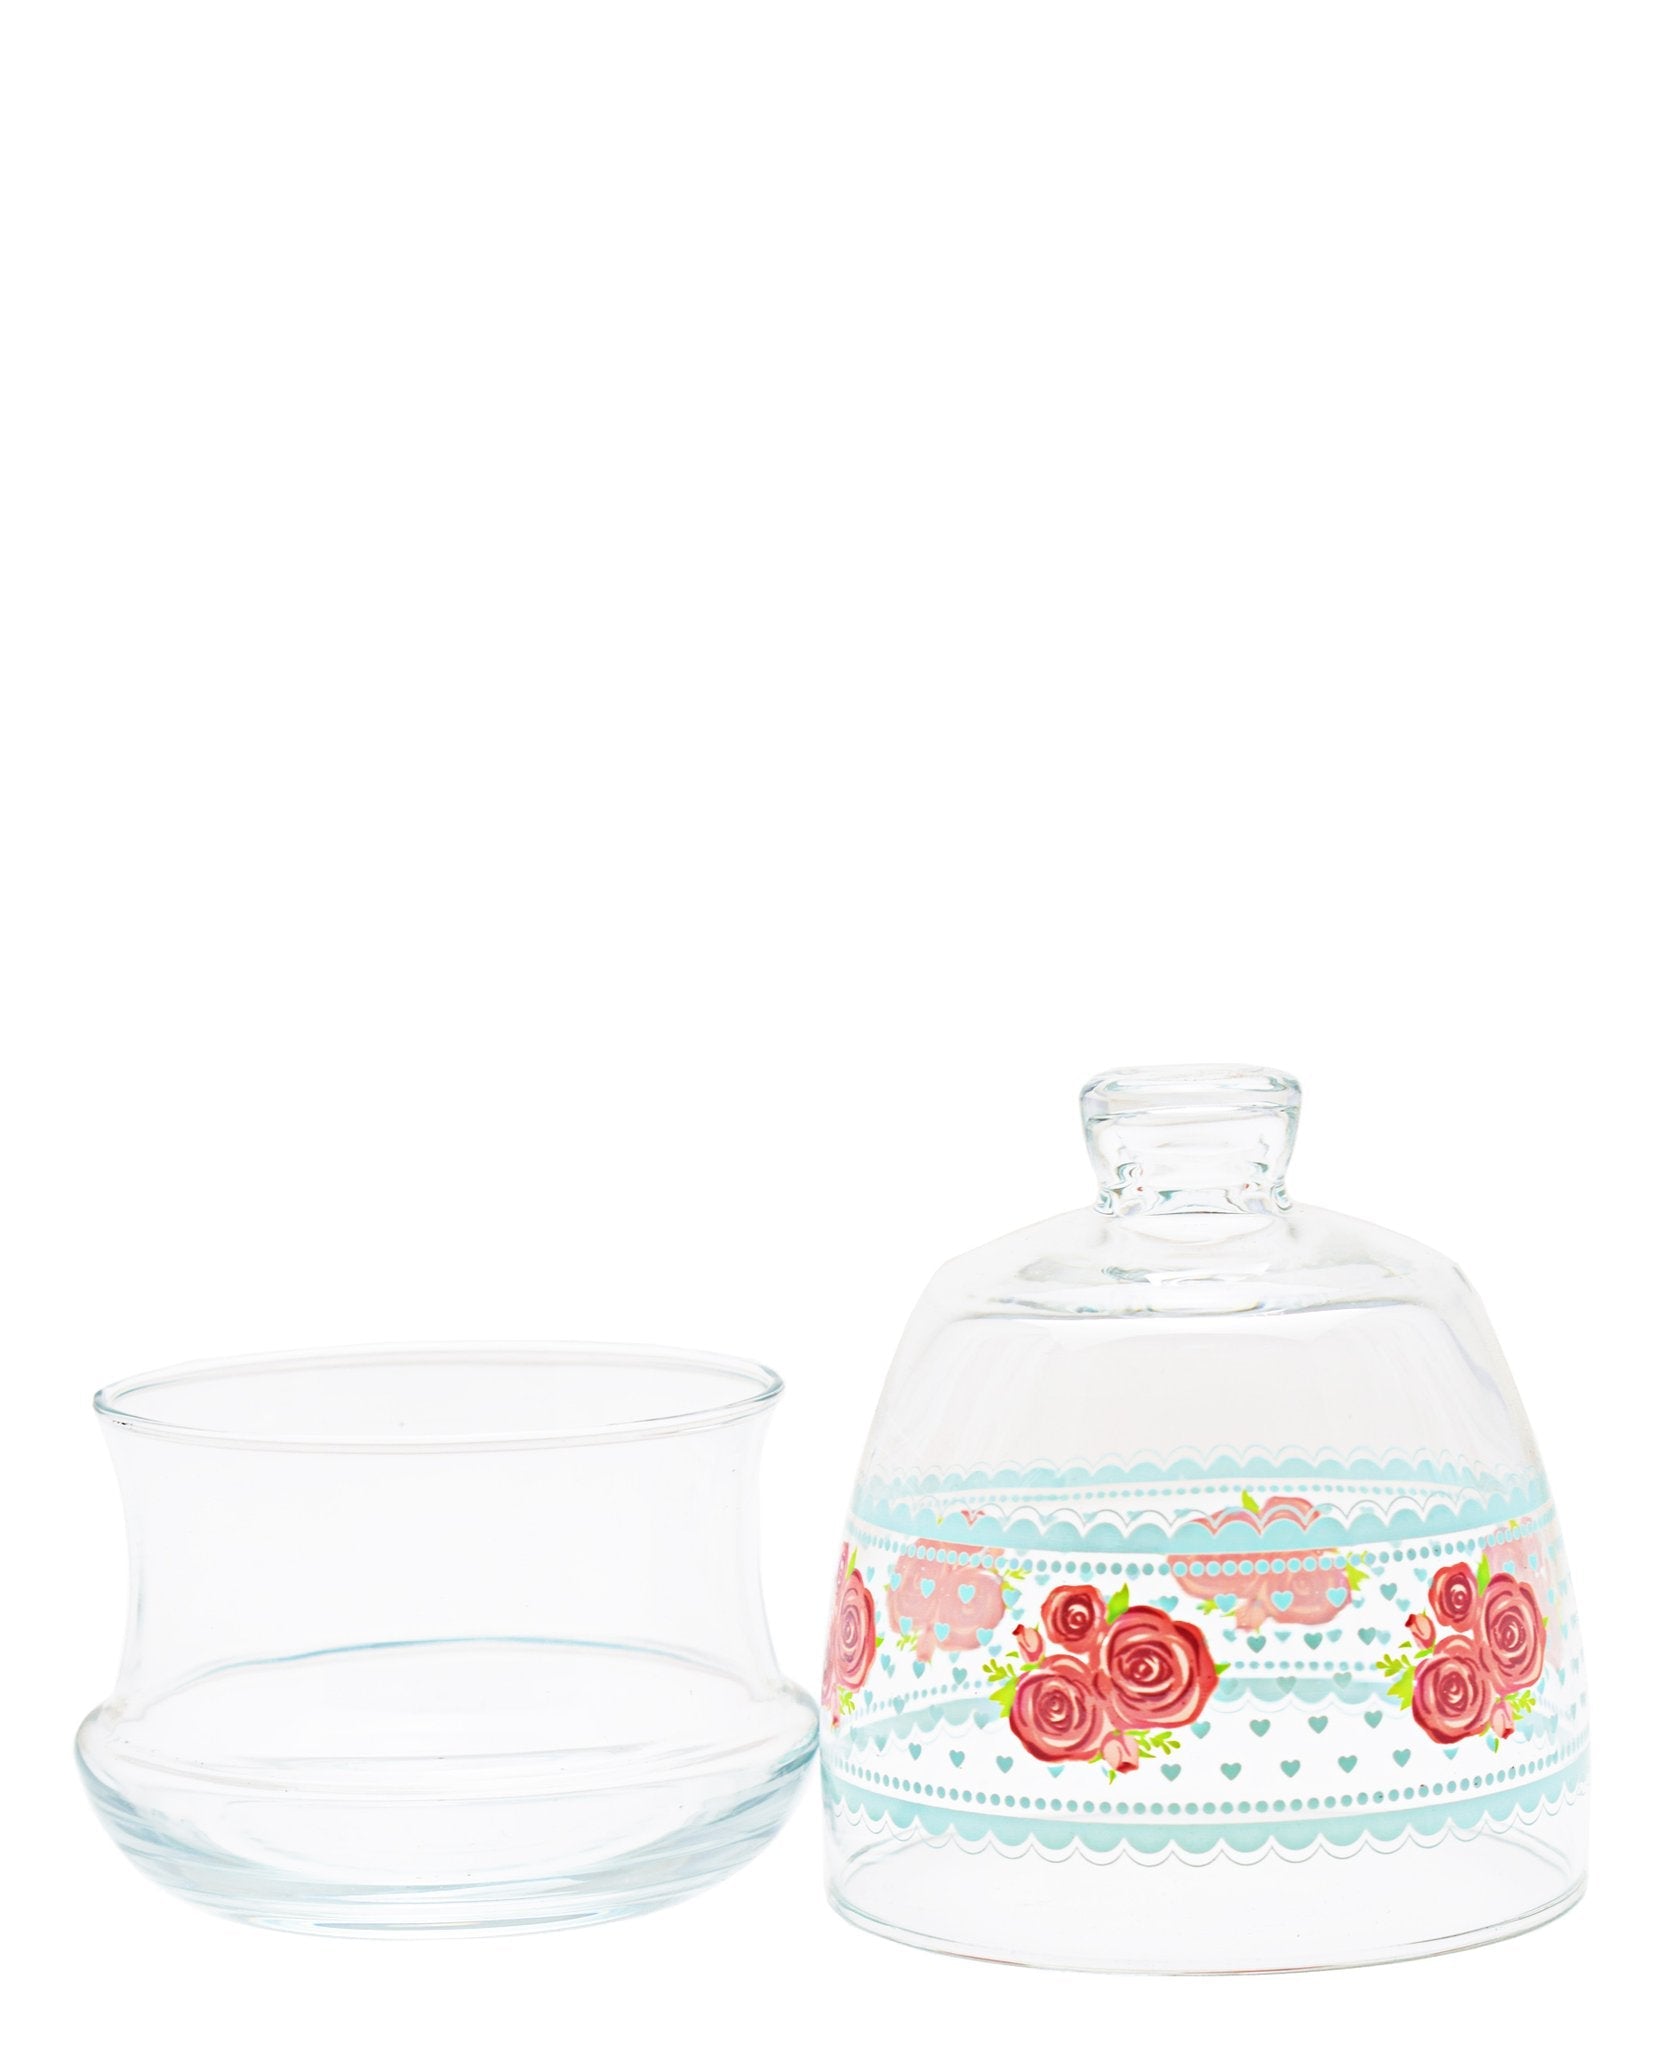 LAV Glass Sugar Bowl J255m Lora Cicek Jar with Dome Lid